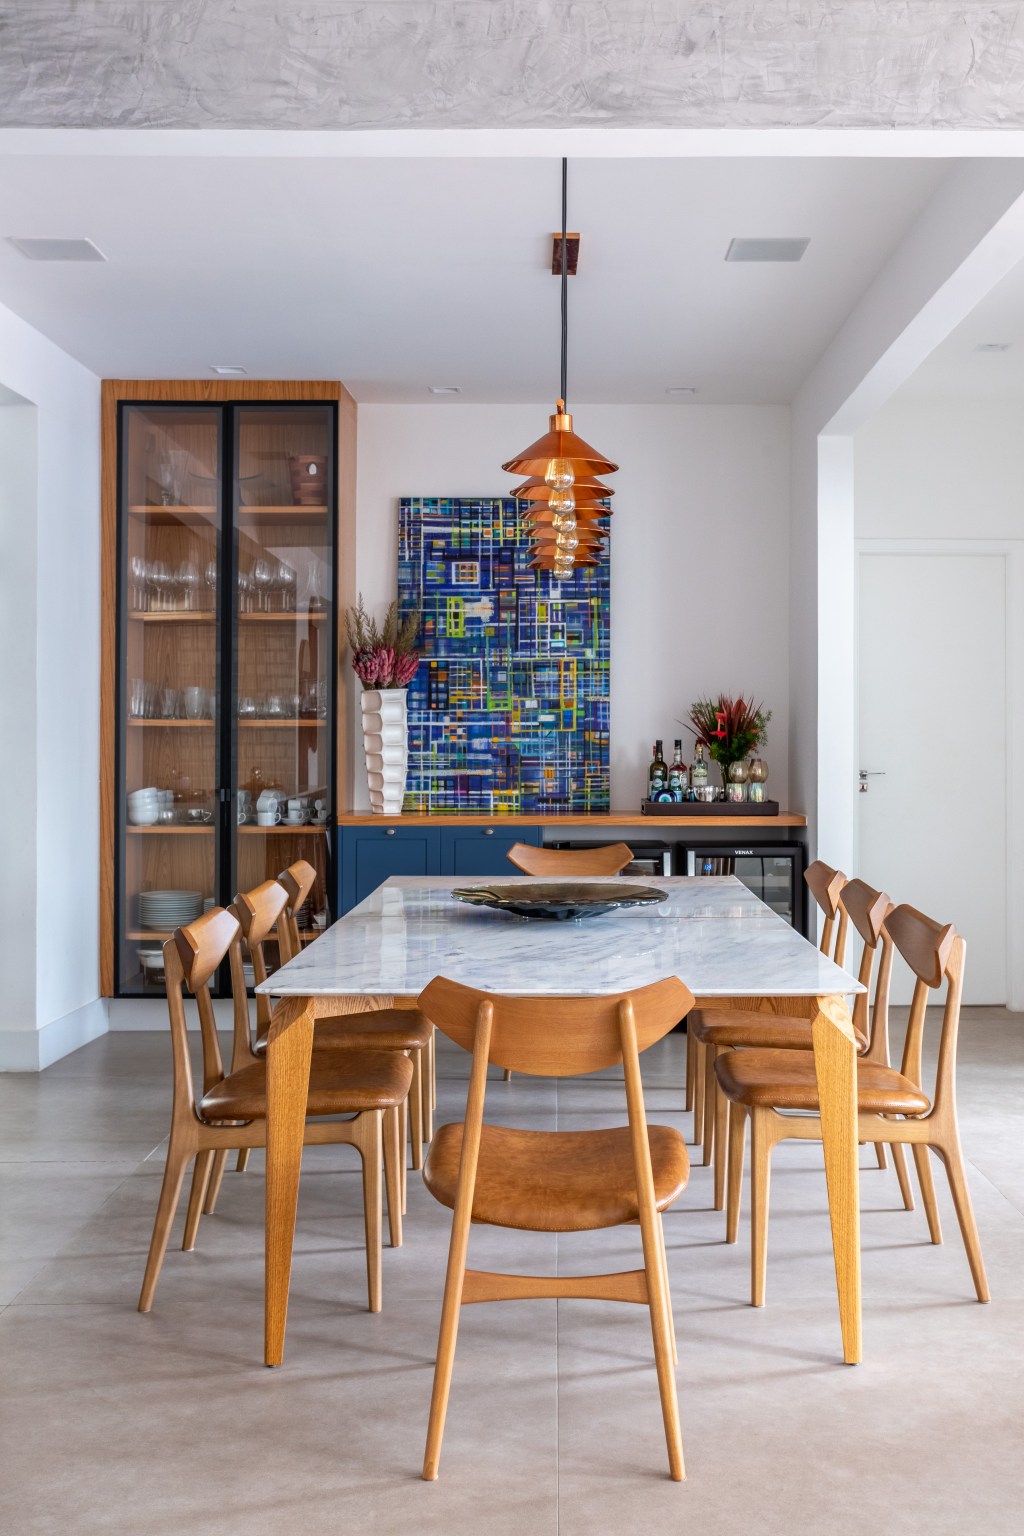 Apê industrial de 200 m² une cores, vidro canelado, tijolos e sofá jeans. Projeto de Ana Cano. Na foto, sala de jantar com cristaleira e marcenaria azul.